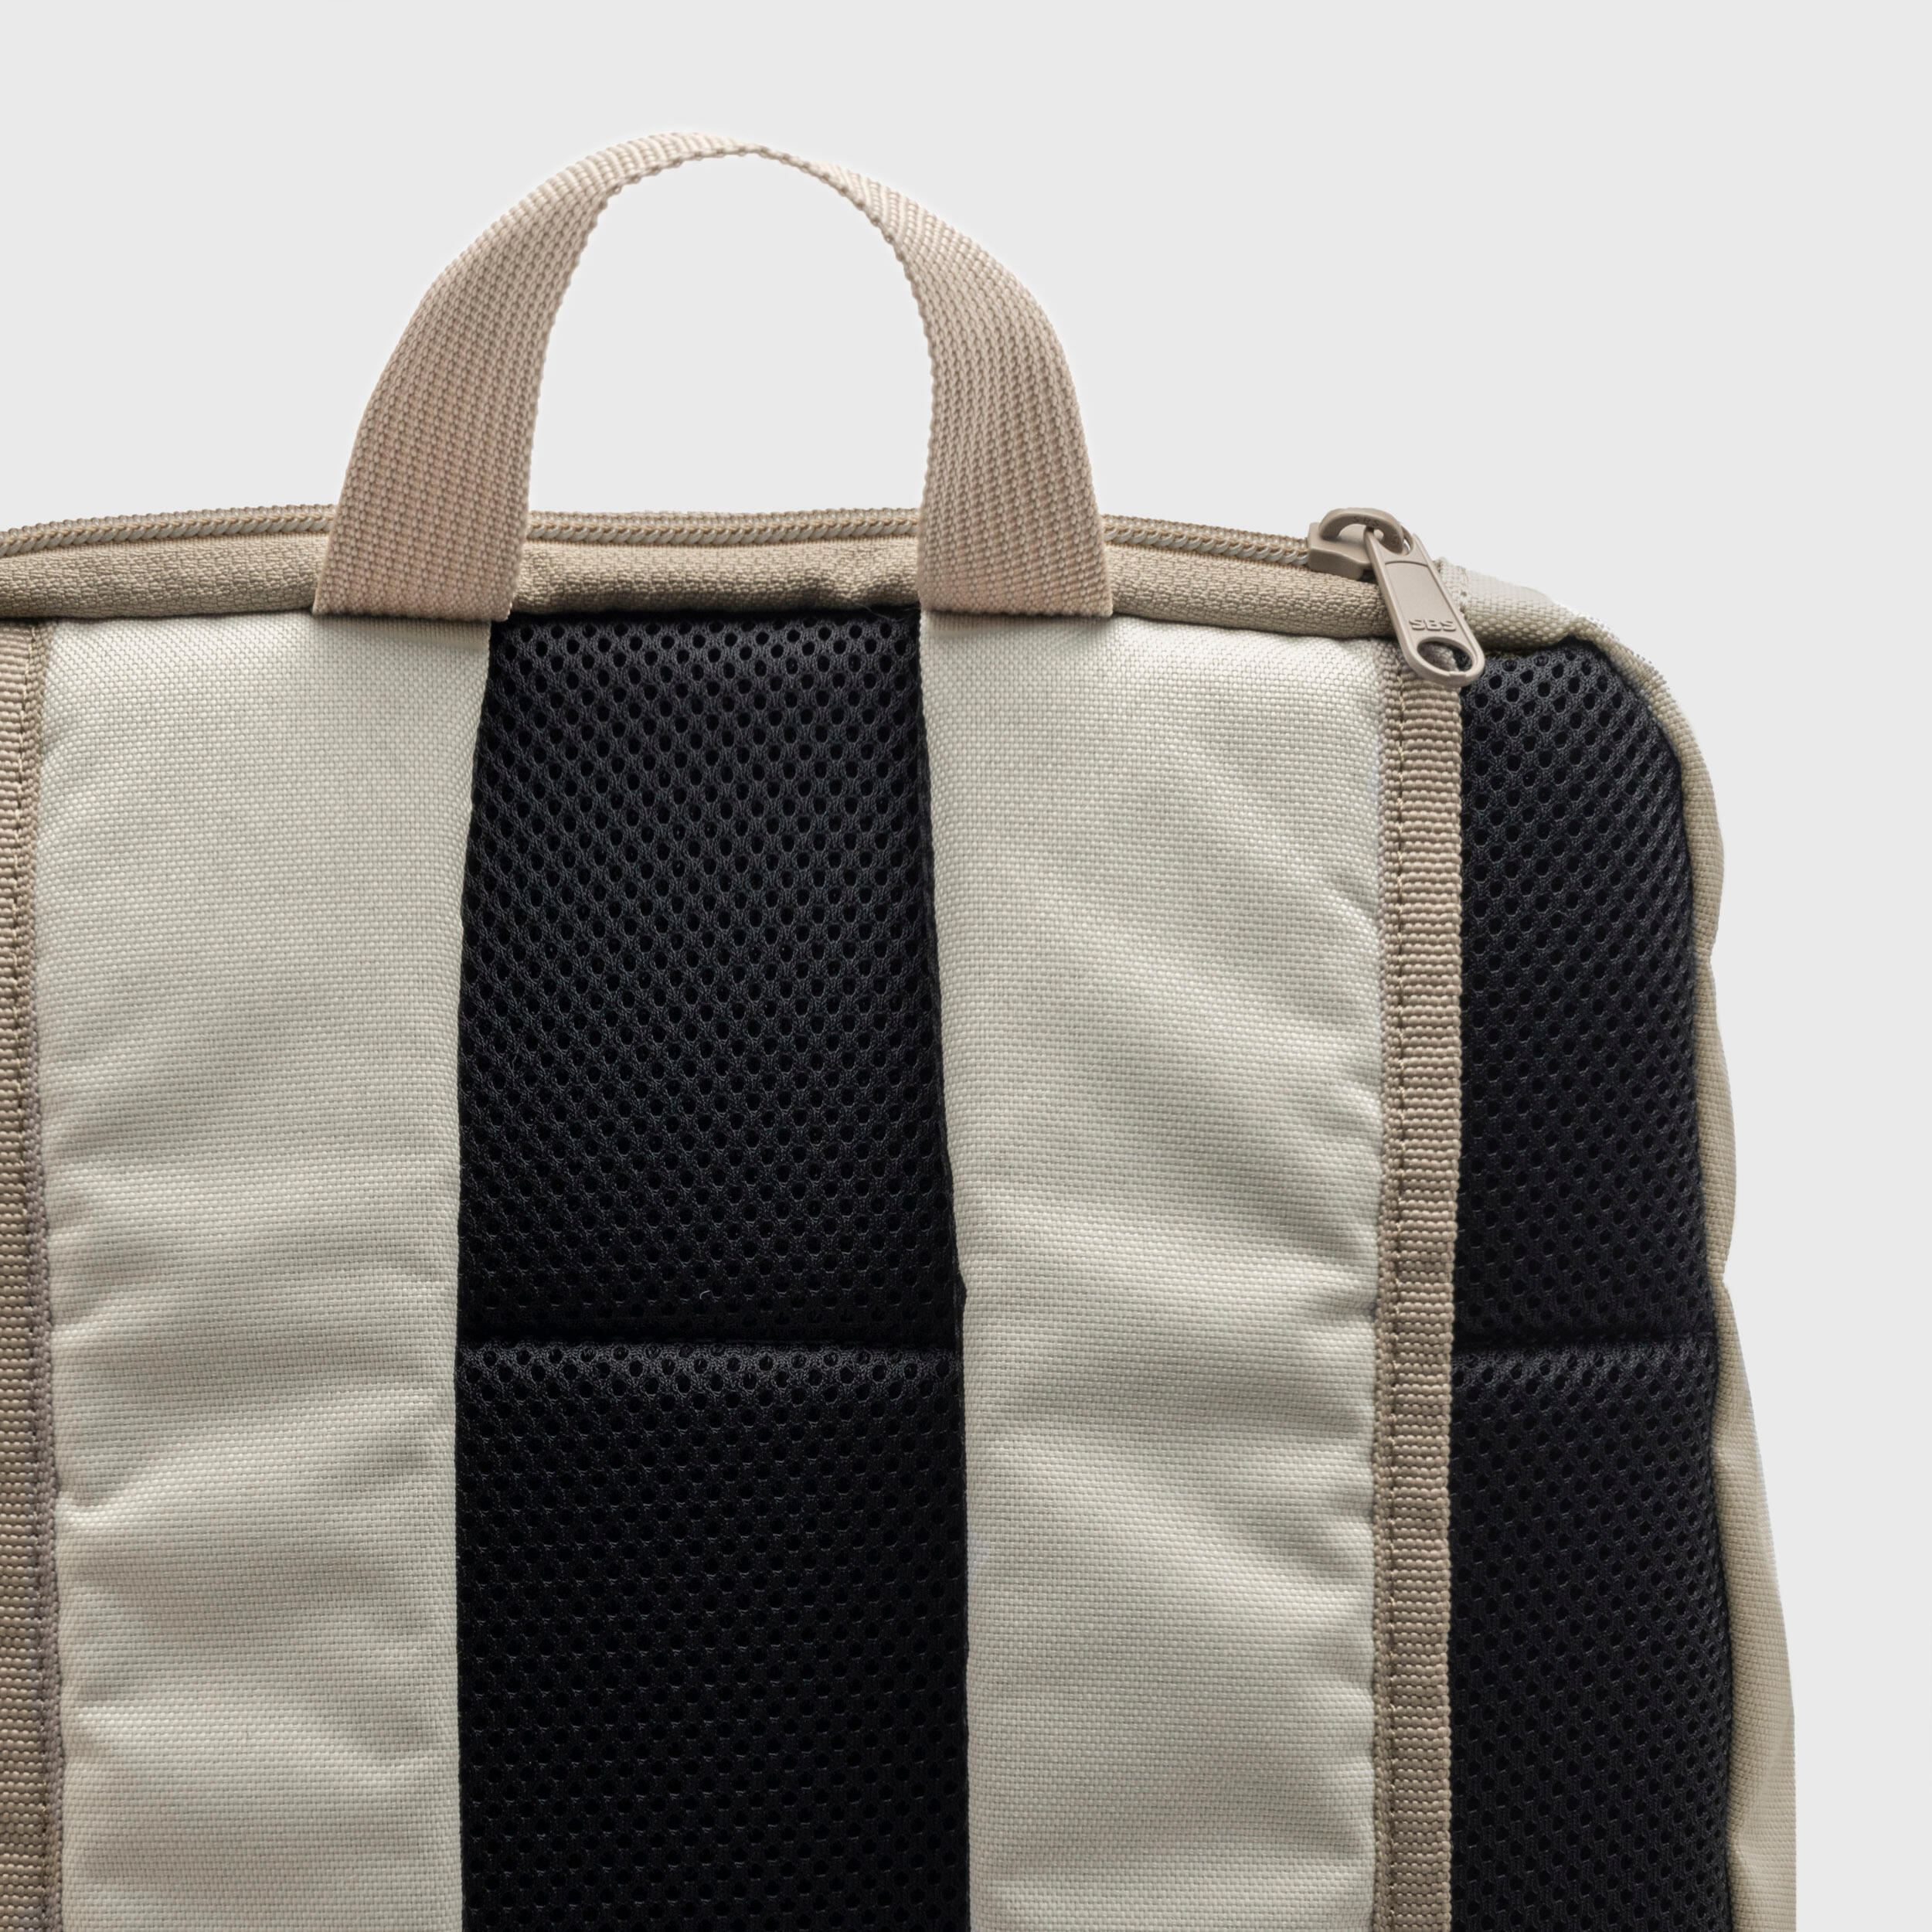 24 L Backpack Essential - Brown 9/9